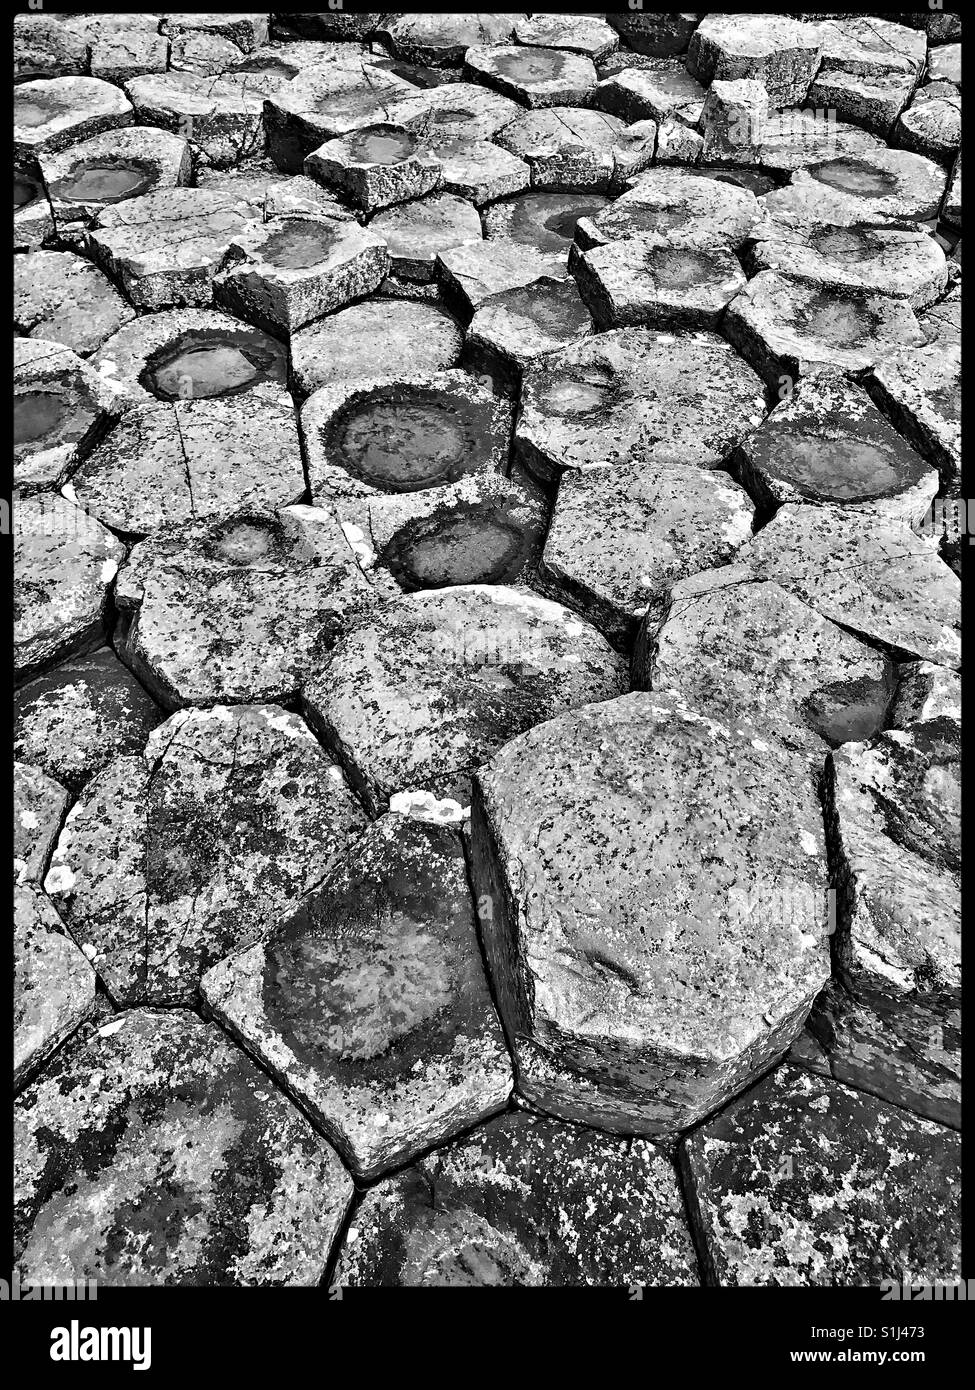 Un pic noir montrant les détails de l'hexagone et pentagone basalte façonne à Giant's Causeway en Co. d'Antrim, en Irlande du Nord. Les géologues croient que ces structures ont été créées il y a 60 millions d'années Banque D'Images